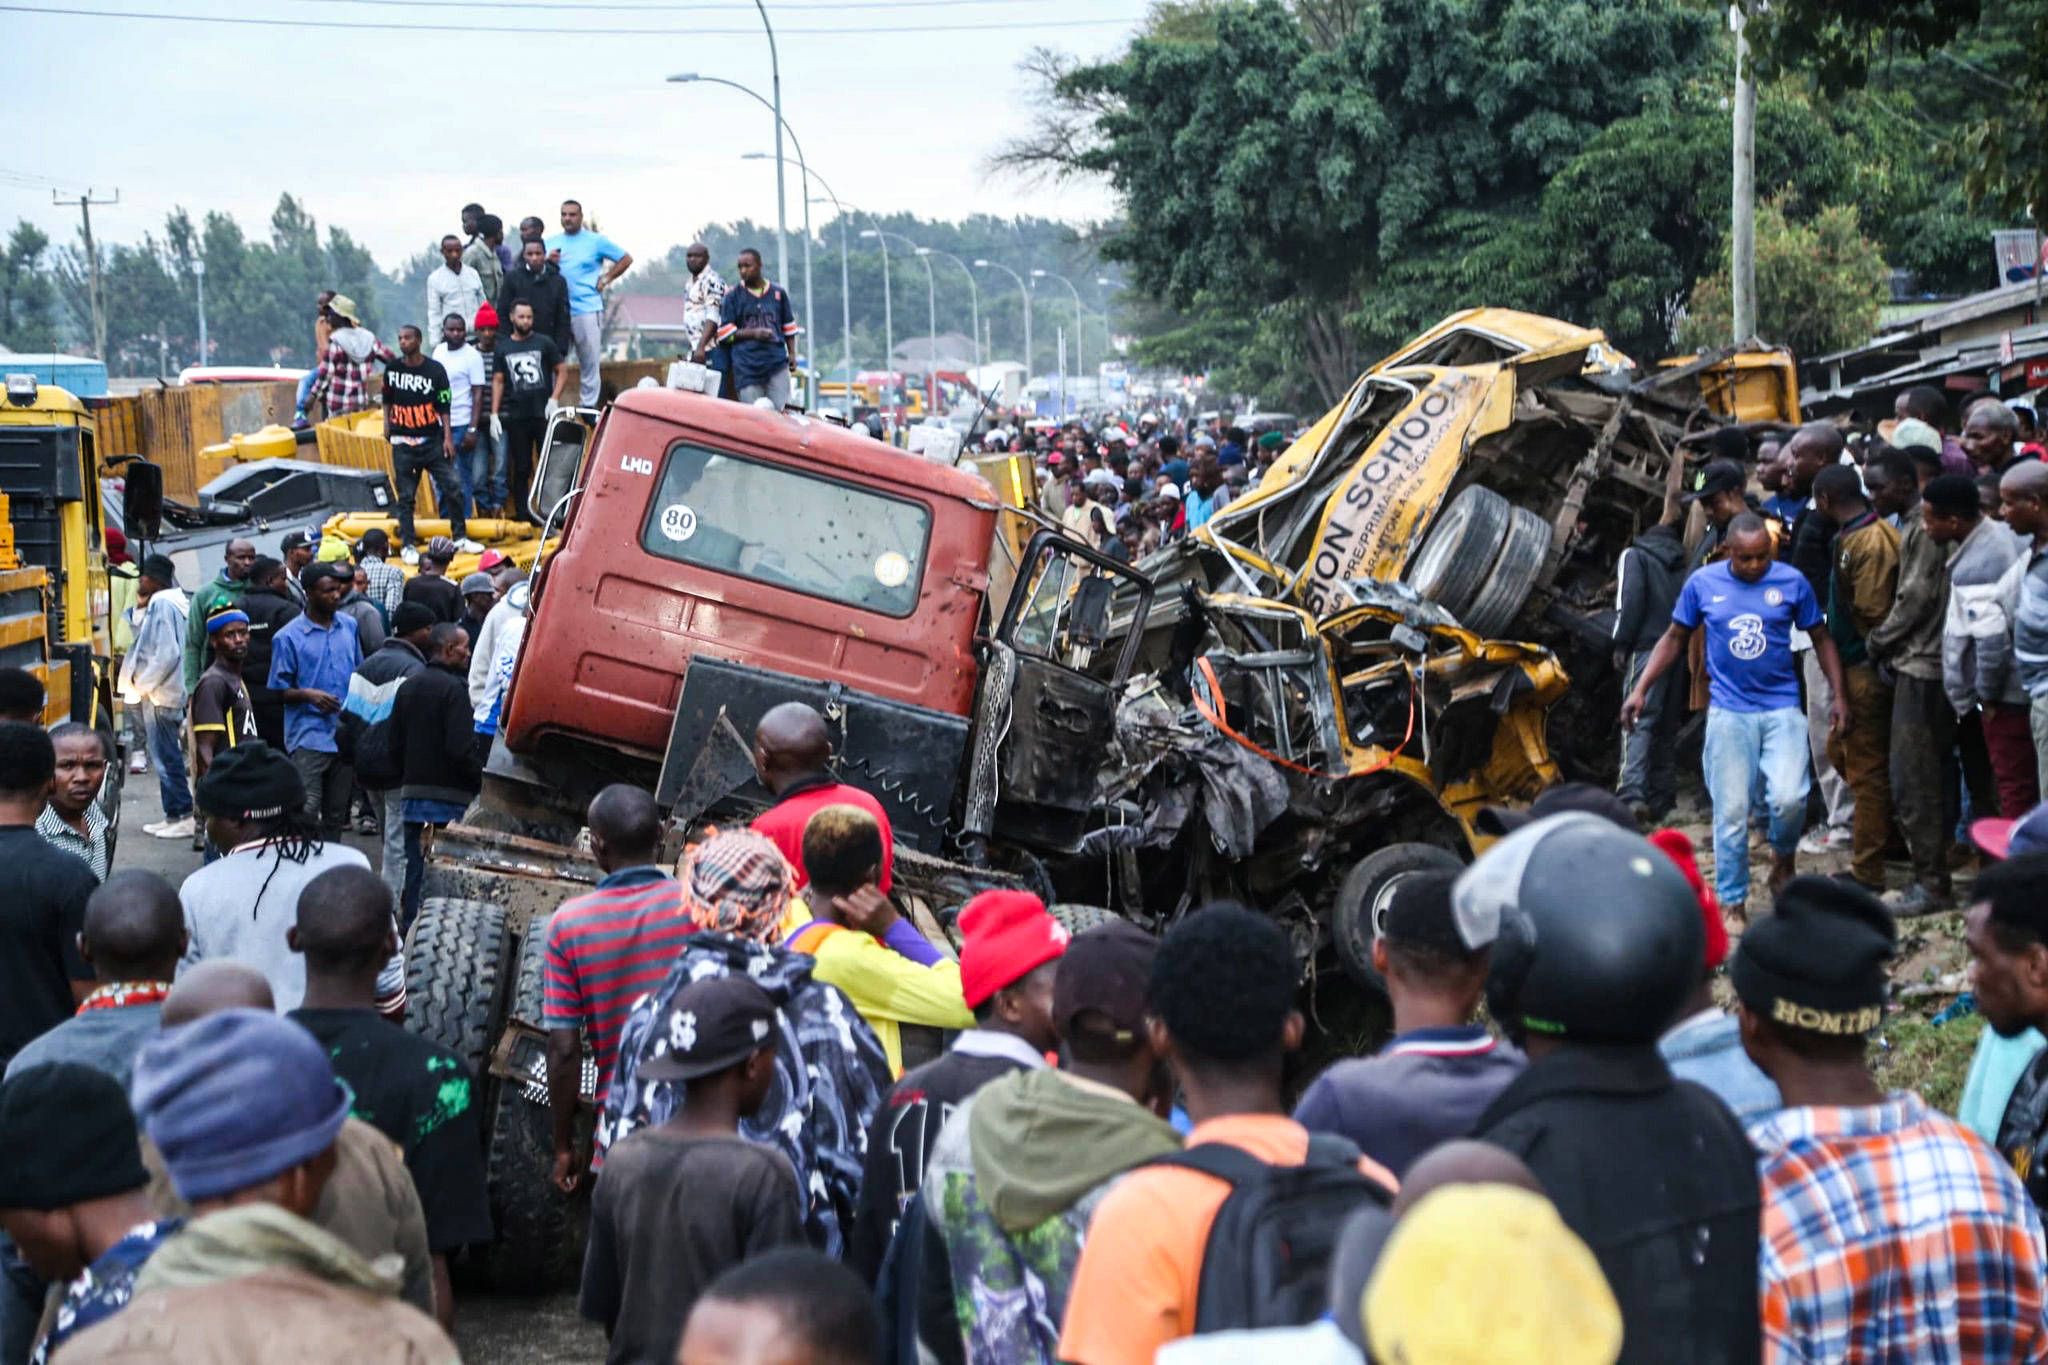 25 Tote bei LKW-Crash in Tansania — Schweizerin verletzt